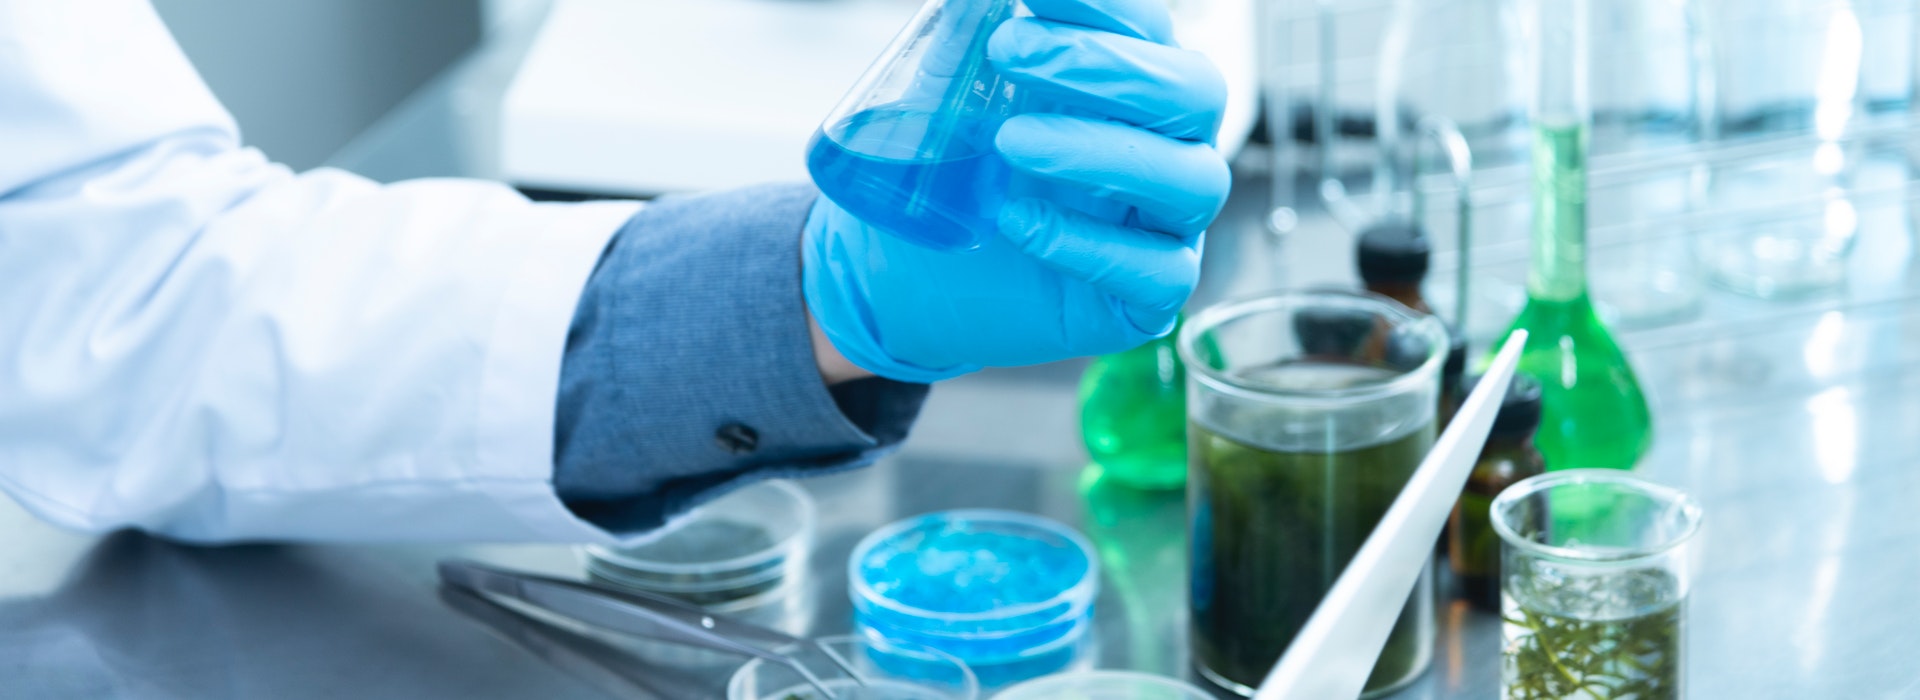 Photo d'une main gantée de bleu tenant un tube à essai chimique